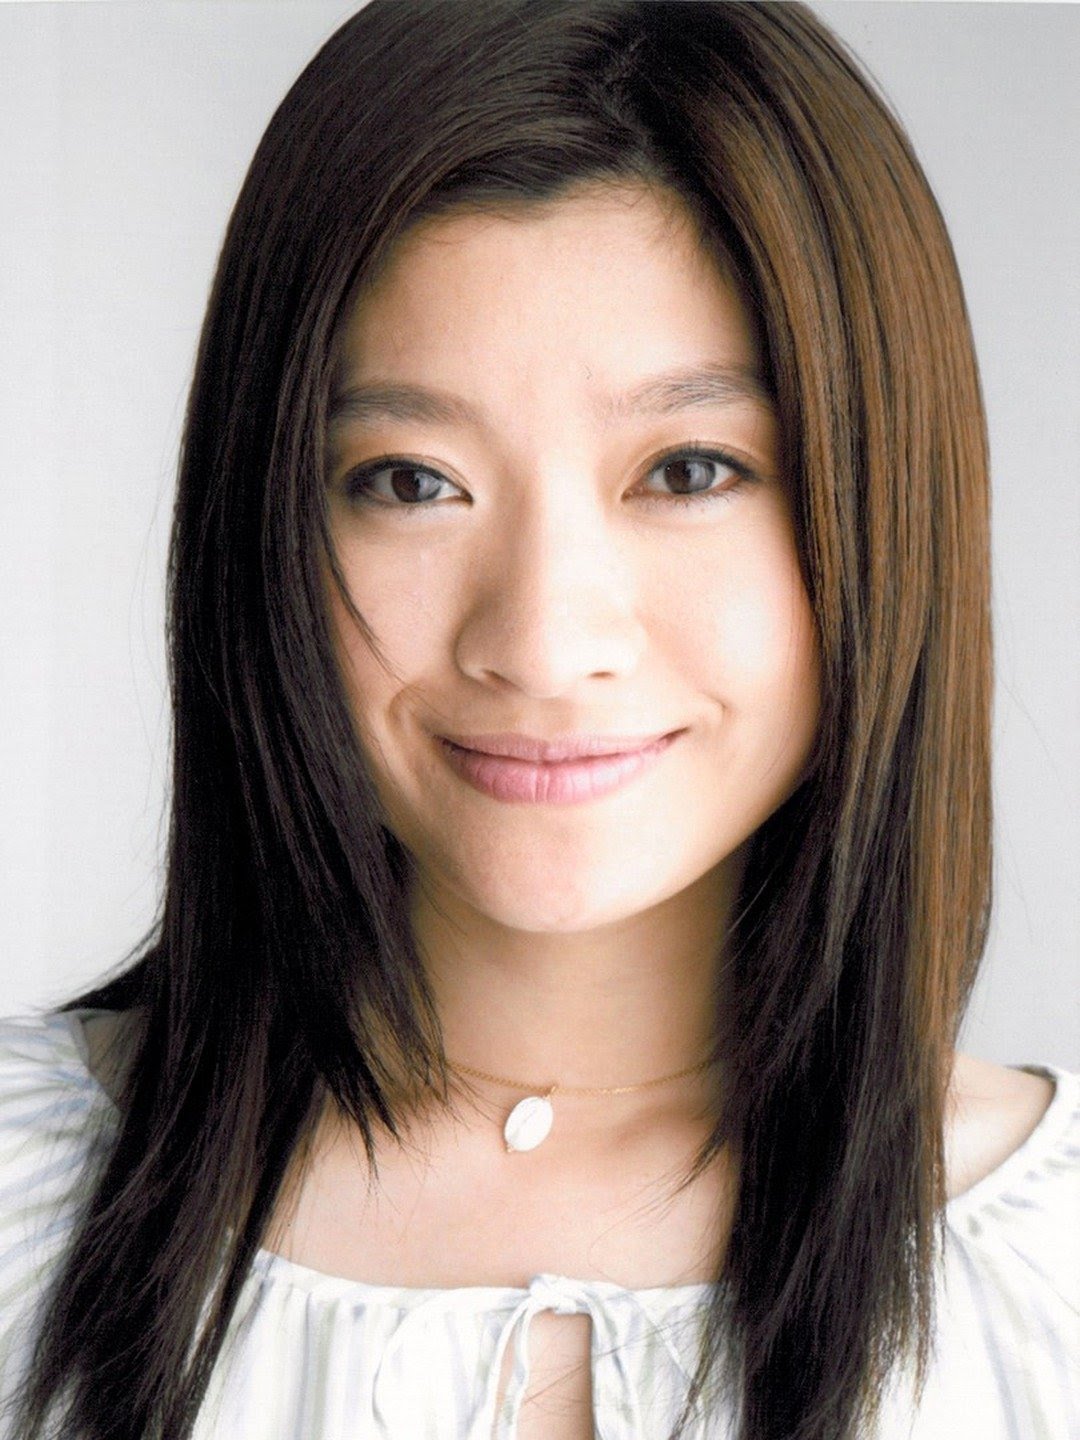 Ryoko Shinohara Japanese Singer, Actress